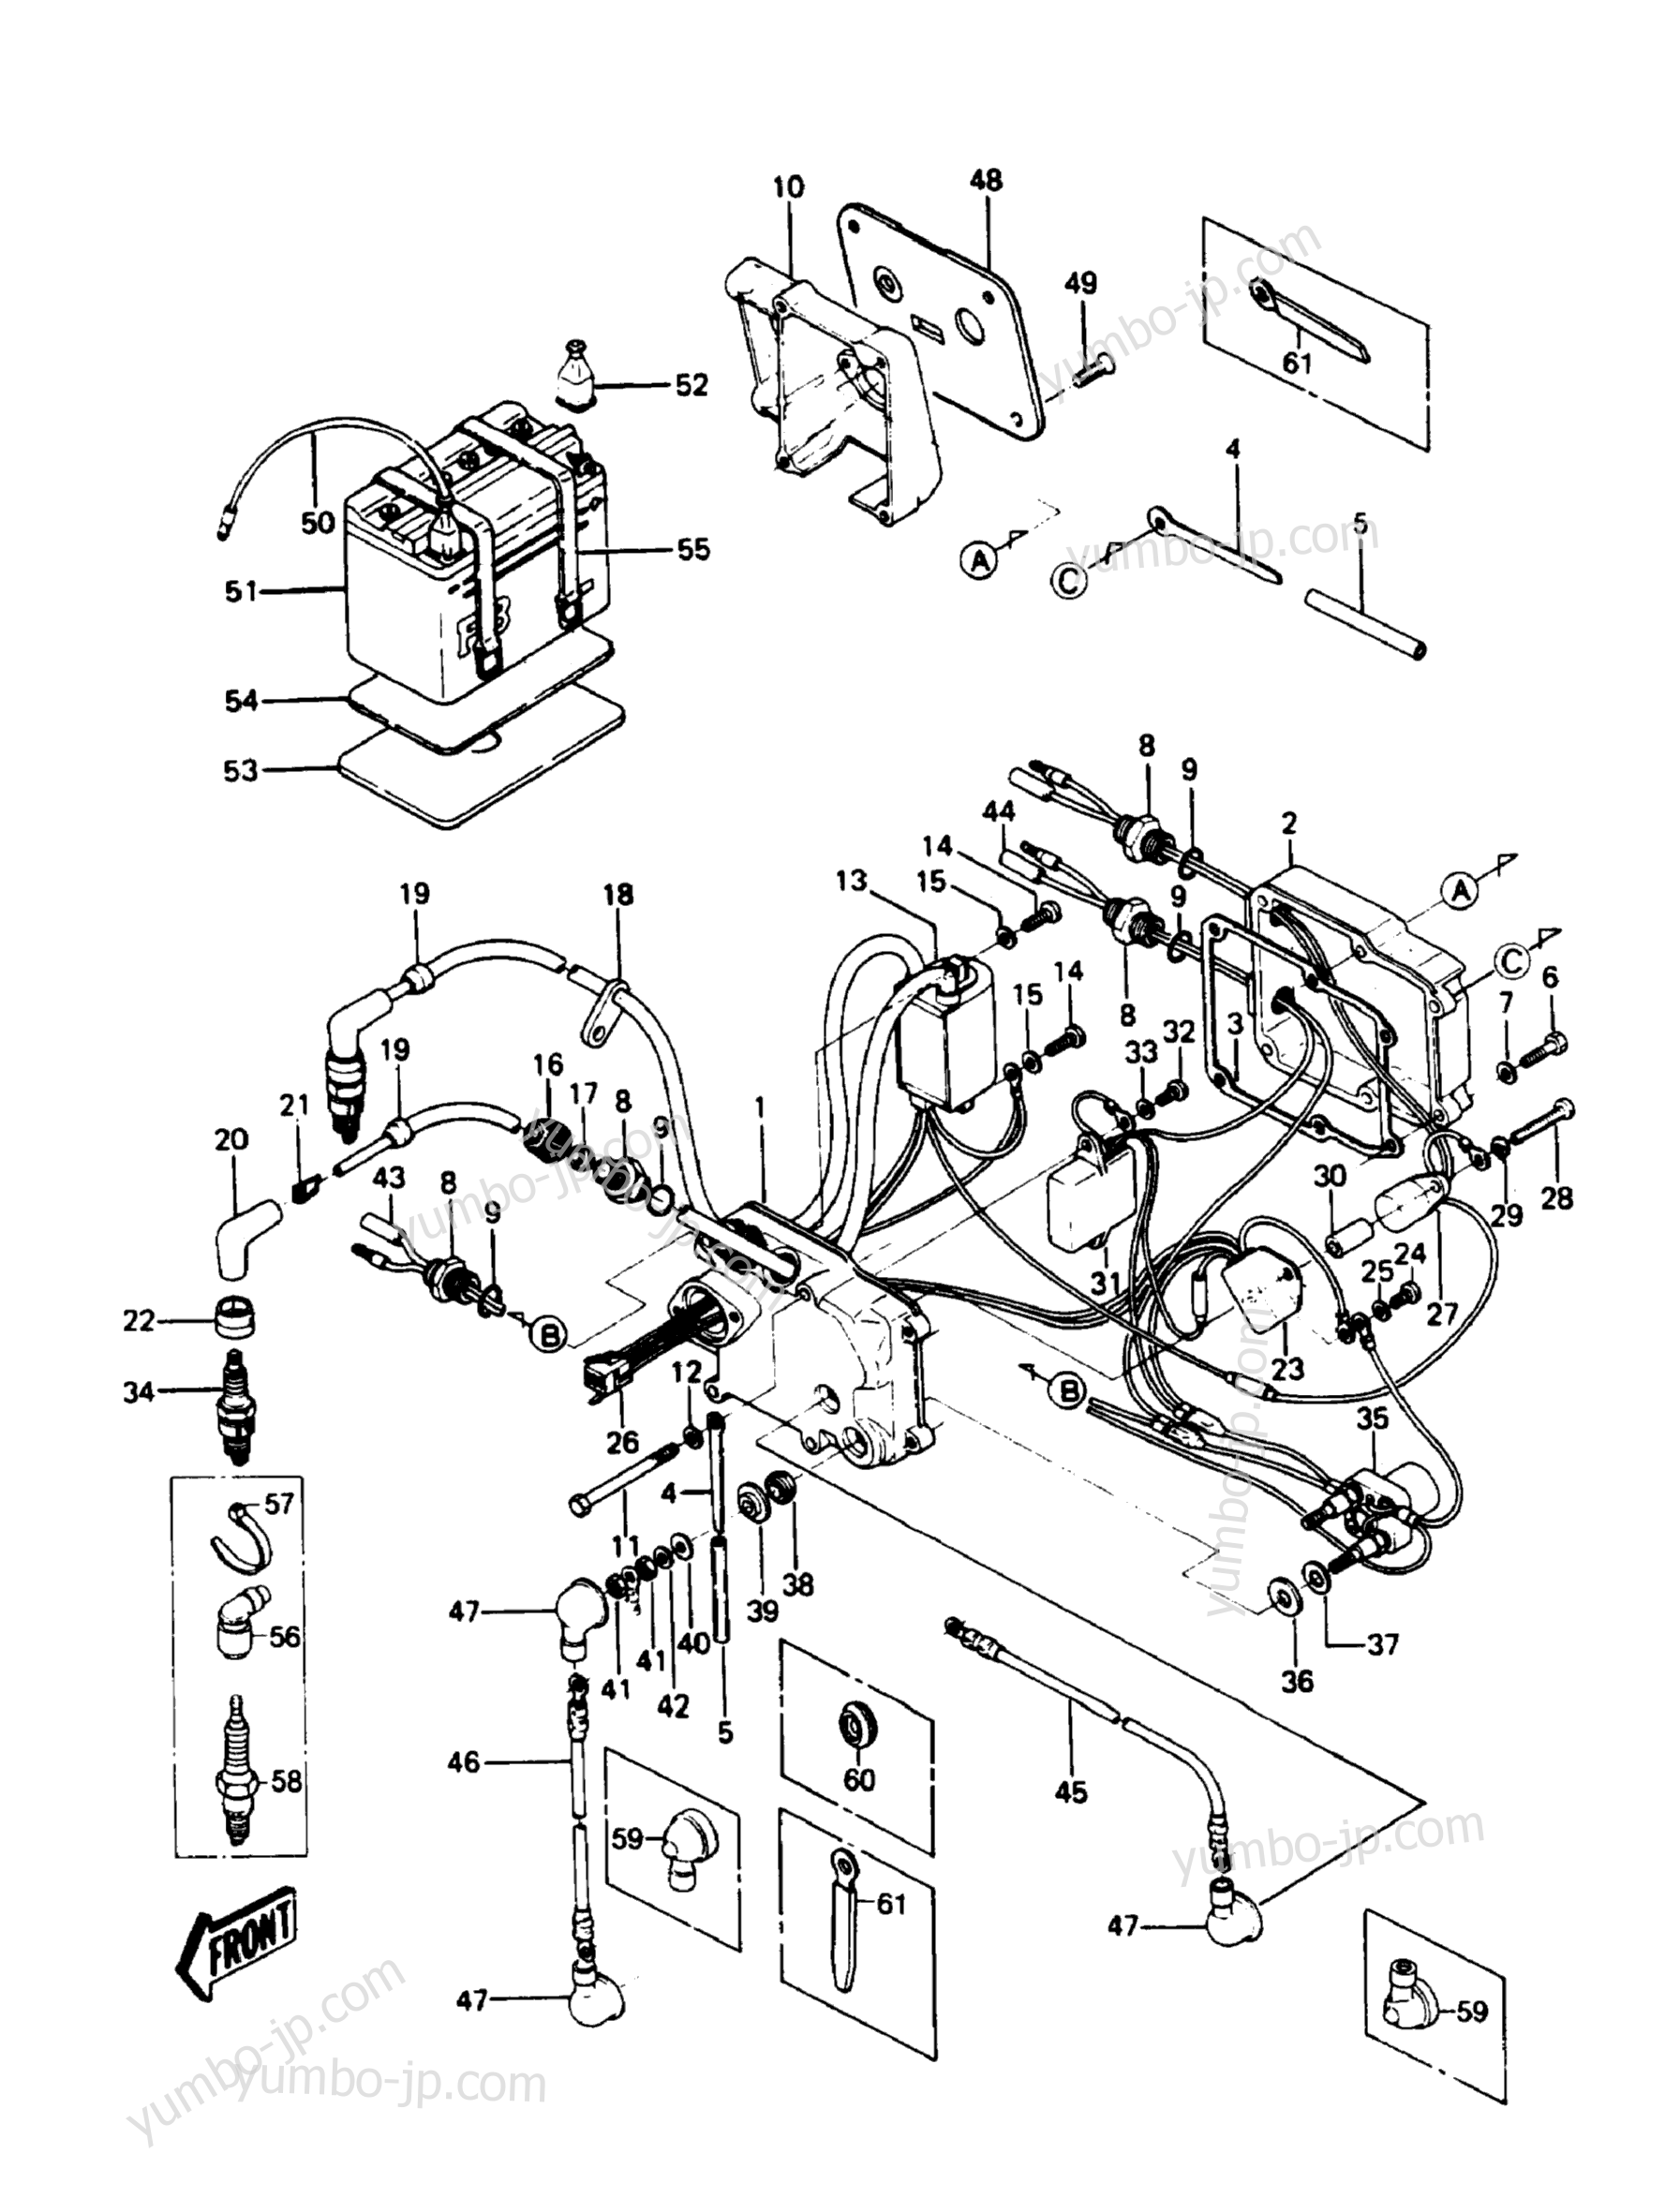 Electric Case для гидроциклов KAWASAKI JST SKI 550 (JS550-A7) 1988 г.